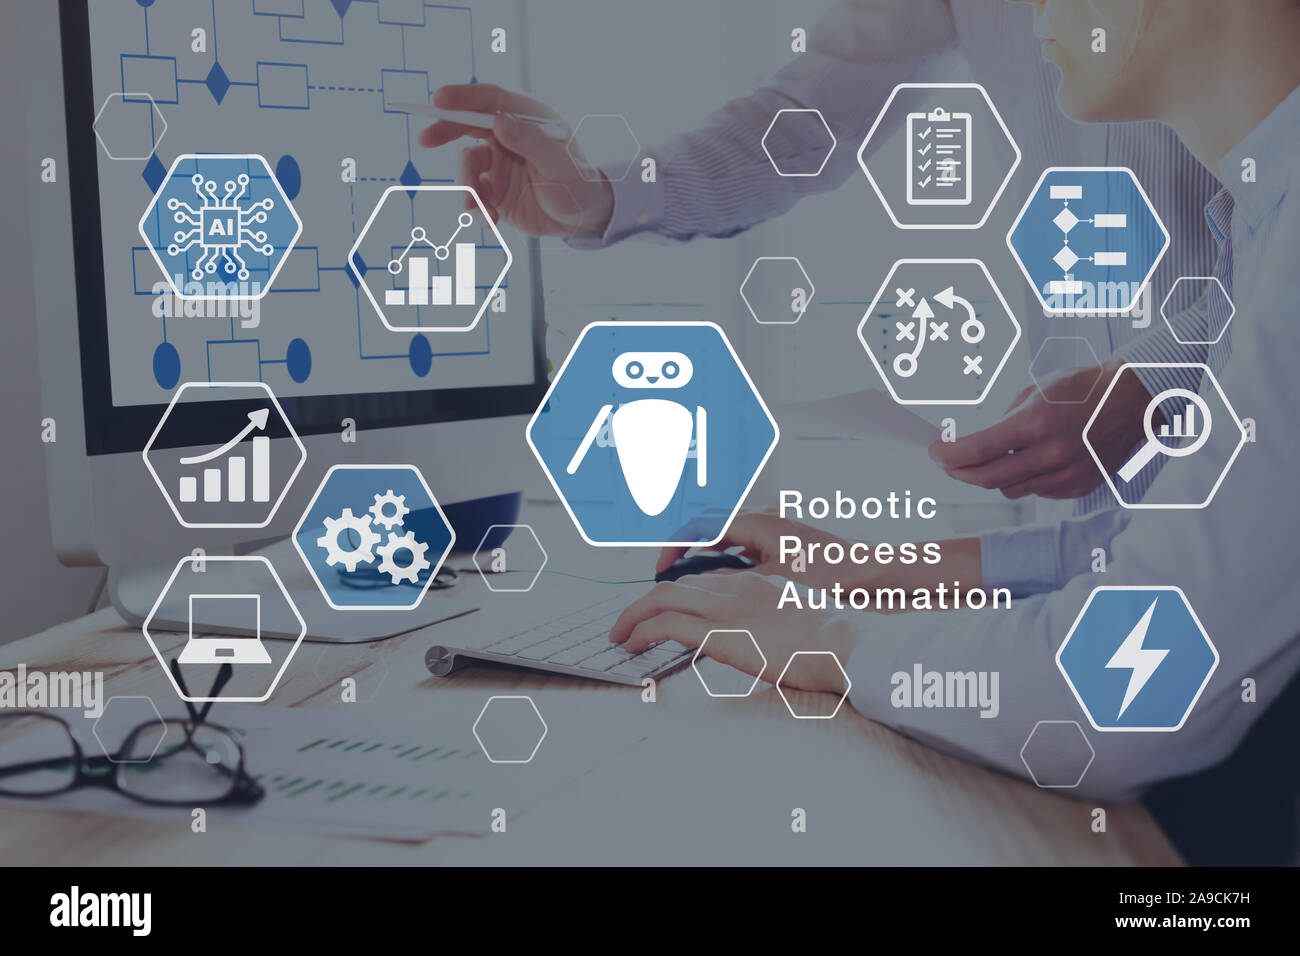 Robotic Process Automation (RPA) Technology Business Aufgaben automatisieren mit direkter Integration von Robotern in Unternehmen Software User Interface Konzept mit Stockfoto